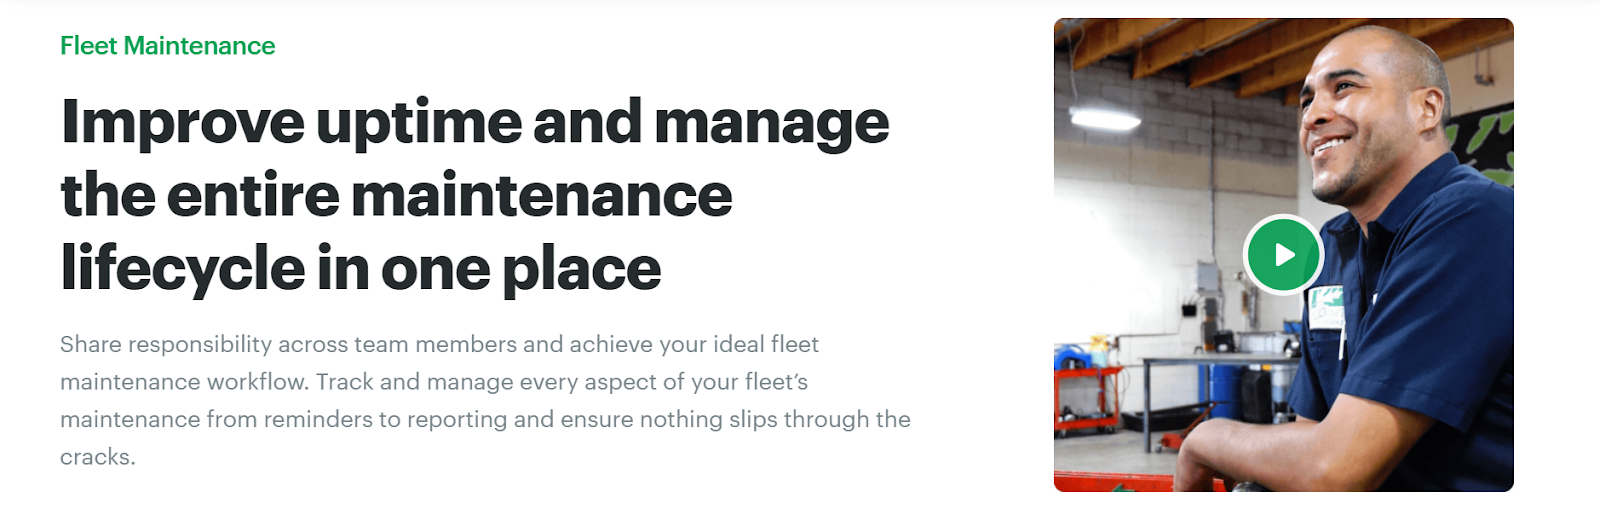 Best Fleet Maintenance Software Compared